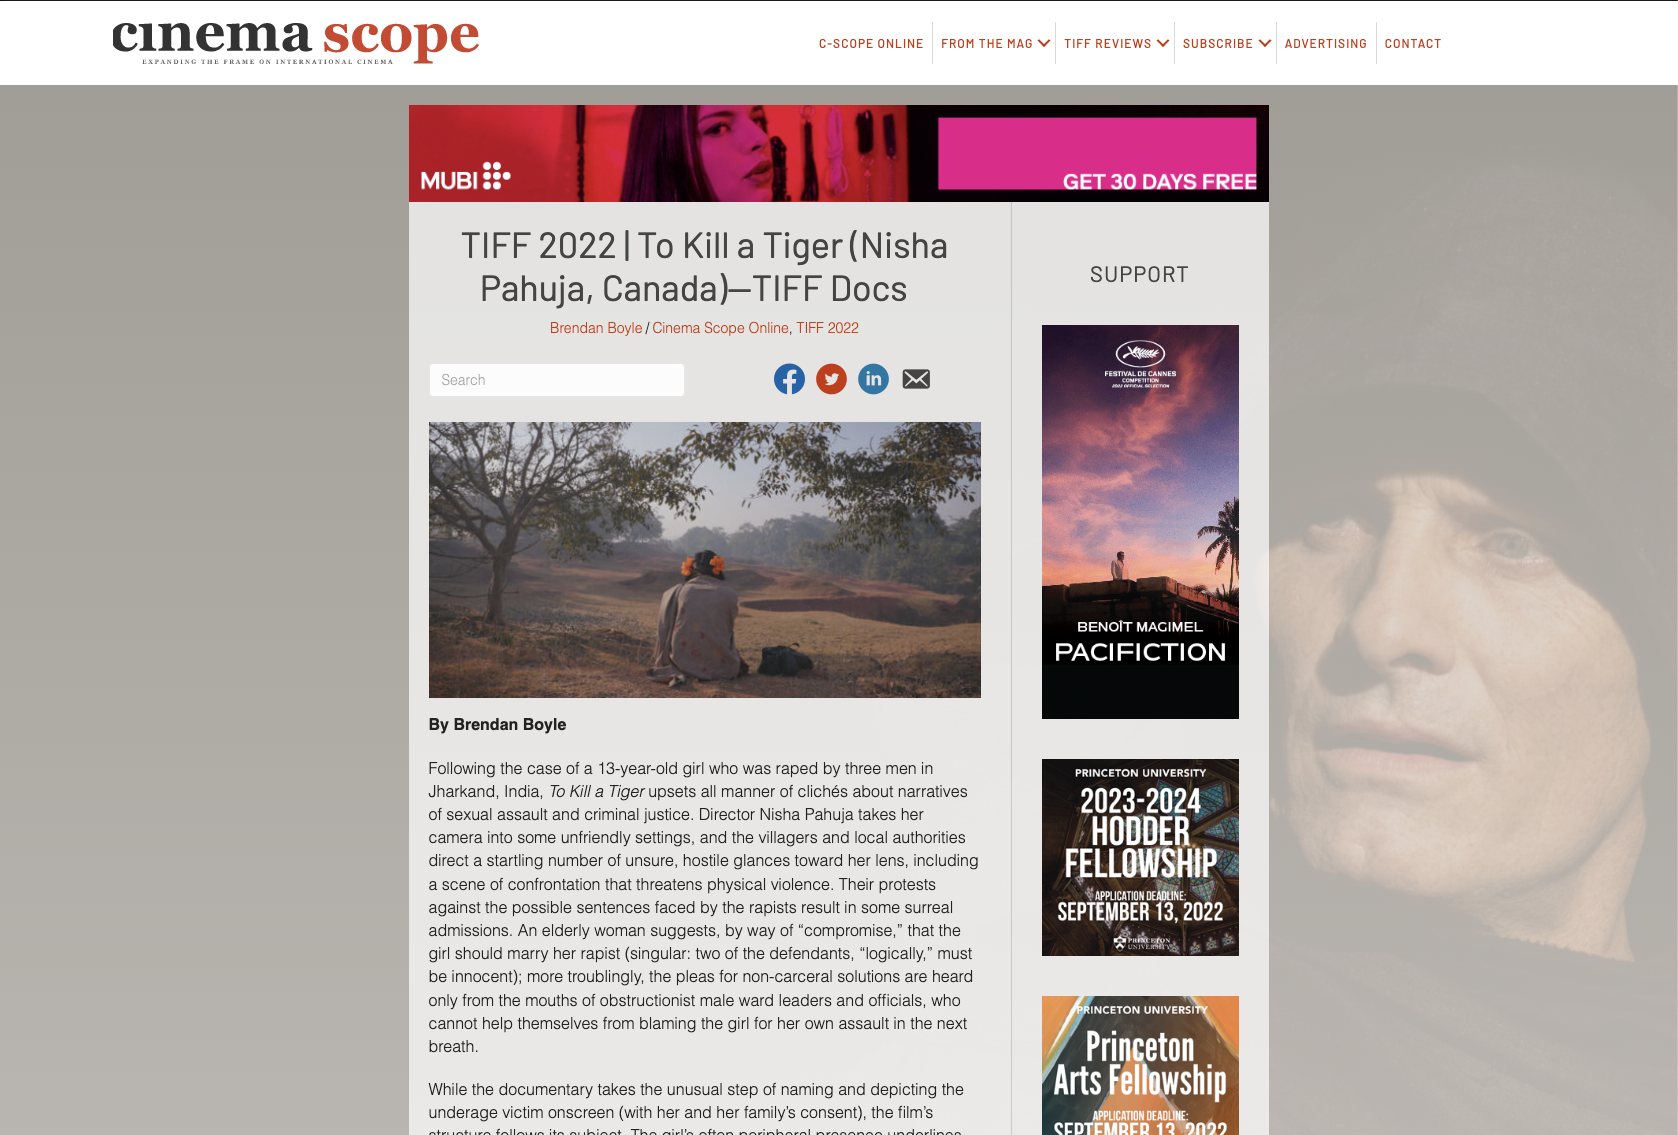 TIFF 2022 | To Kill a Tiger (Nisha Pahuja, Canada)—TIFF Docs